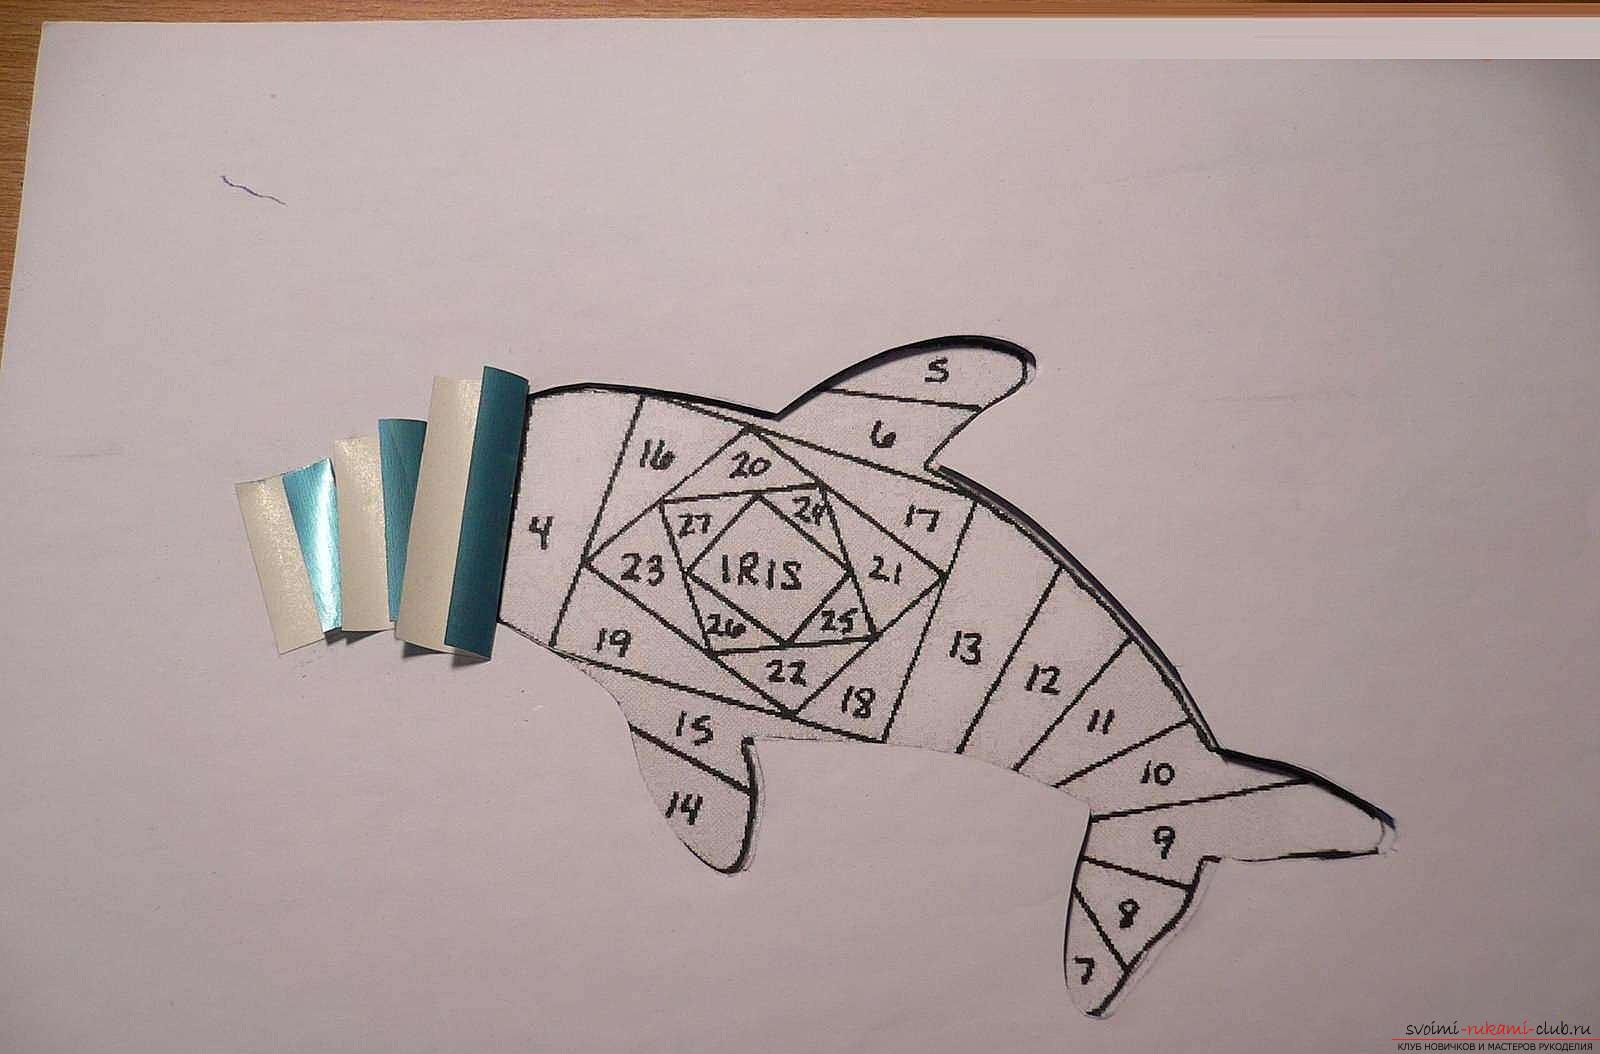 Как сделать картинку с дельфином в технике айрис фолдинг, подробная инструкция с шаблоном, фото и описанием работы. Фото №6